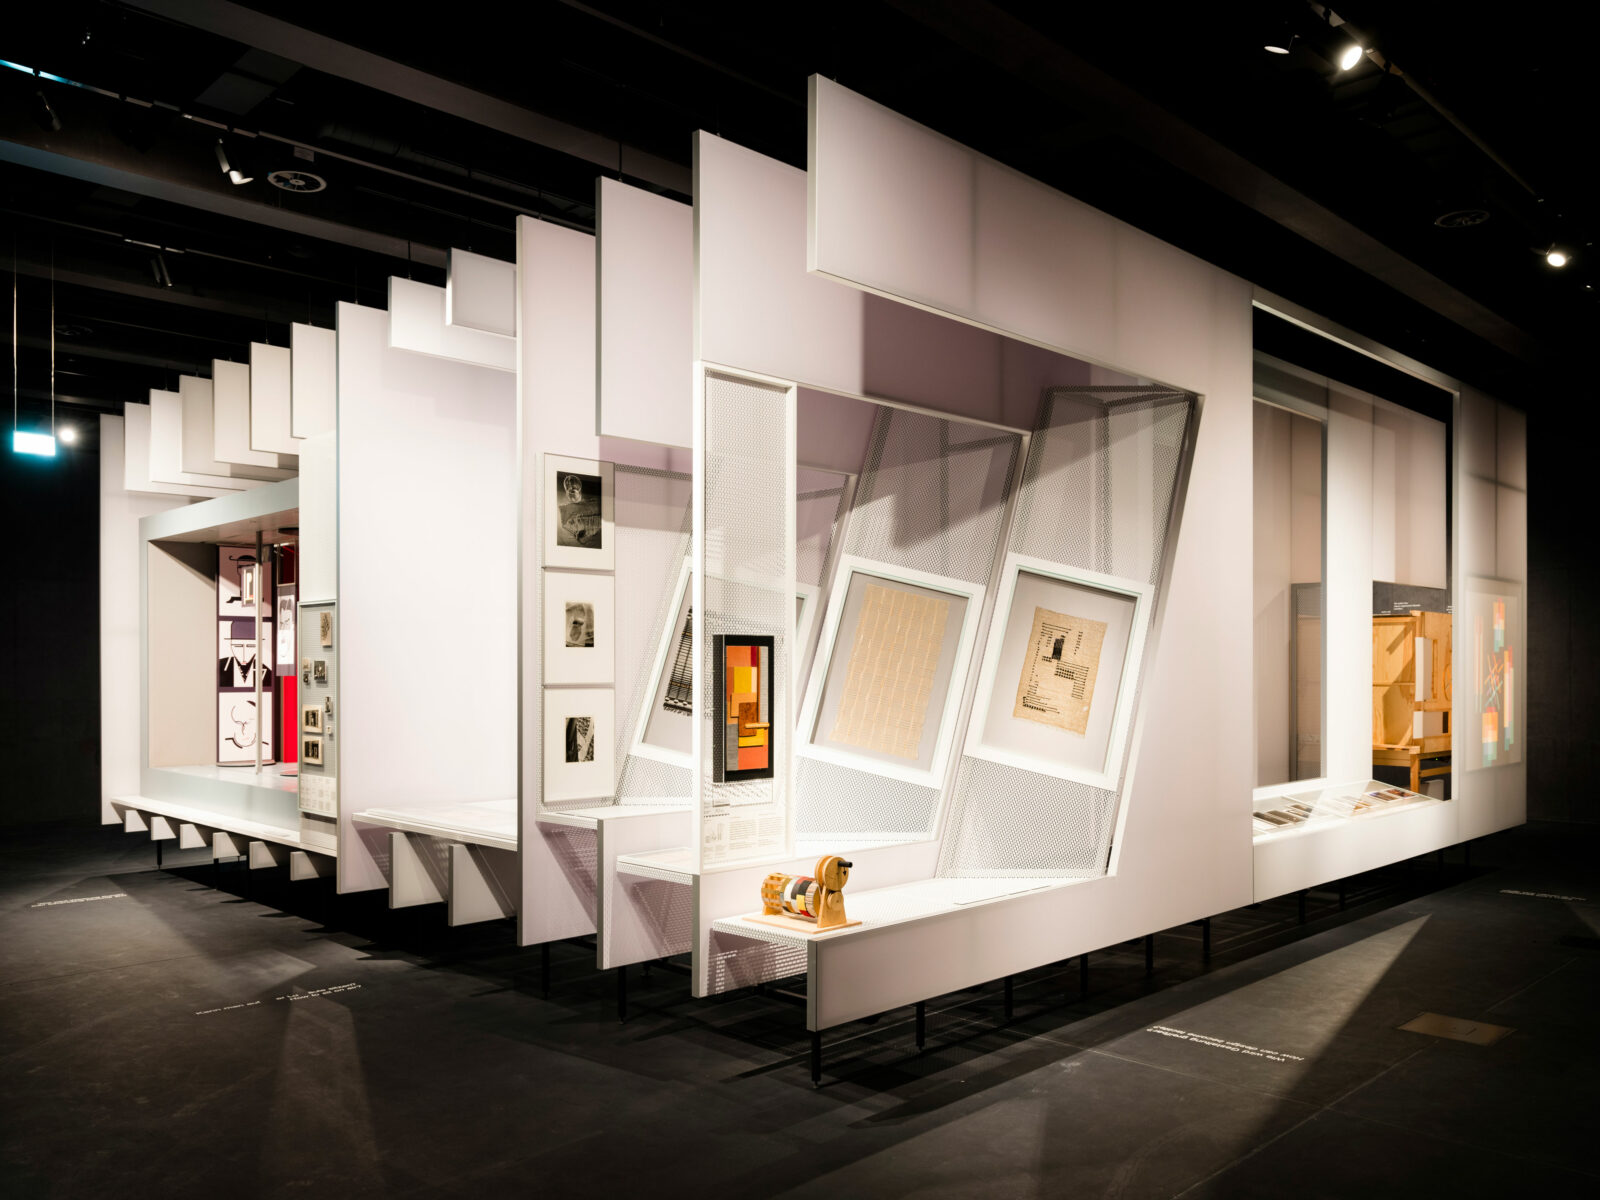 Inneinandergeschachtelte Ausstellungswände, die verschiedene Grafiken und Objekte der Bauhauszeit zeigen.